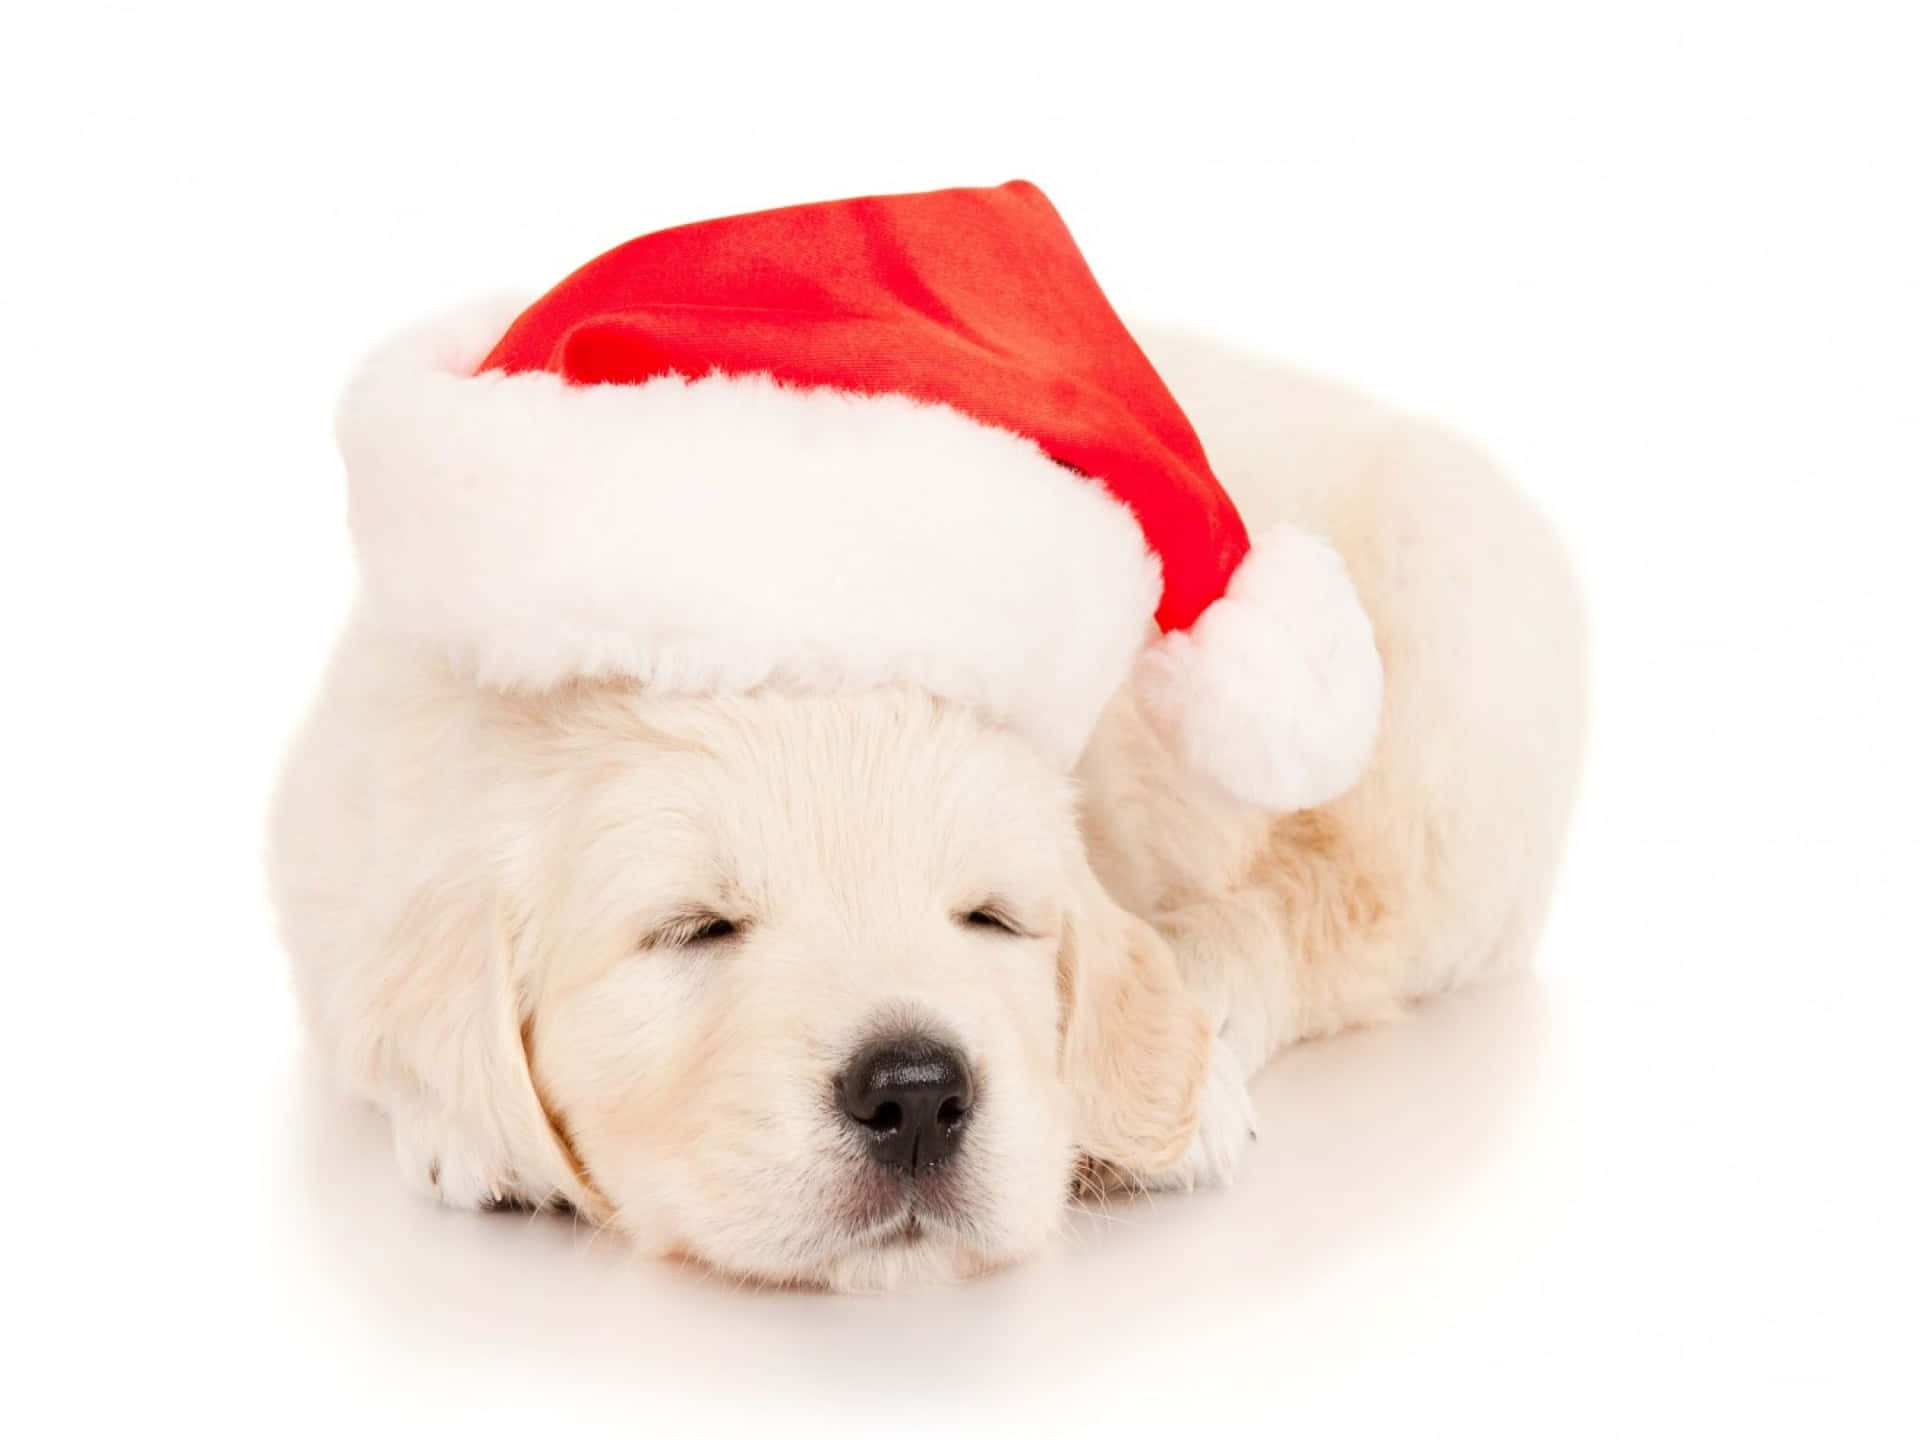 Imagende Un Perro Labrador Blanco Con Sombrero De Santa Claus Para Navidad.